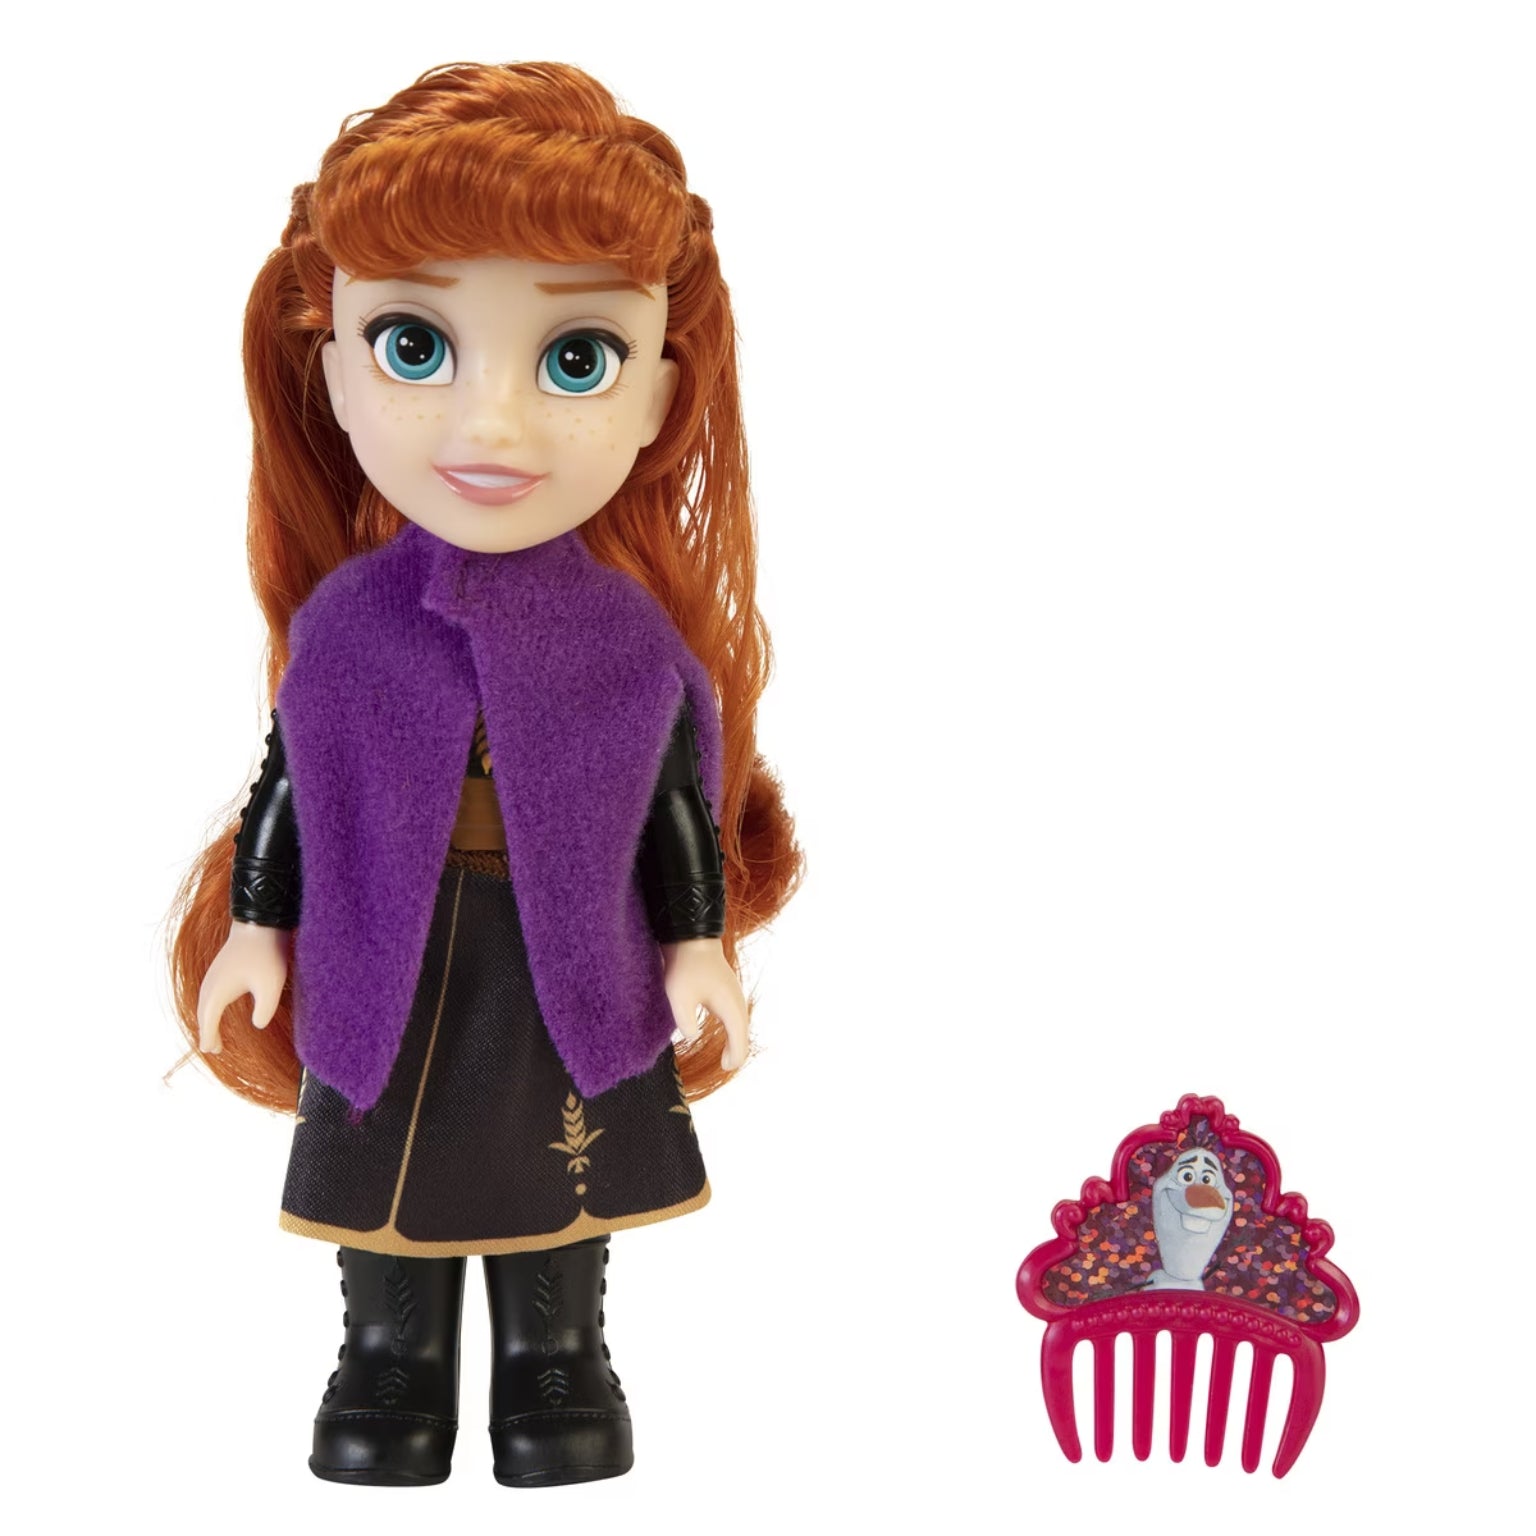 Boneca Princesa Disney – Anna com vestido preto